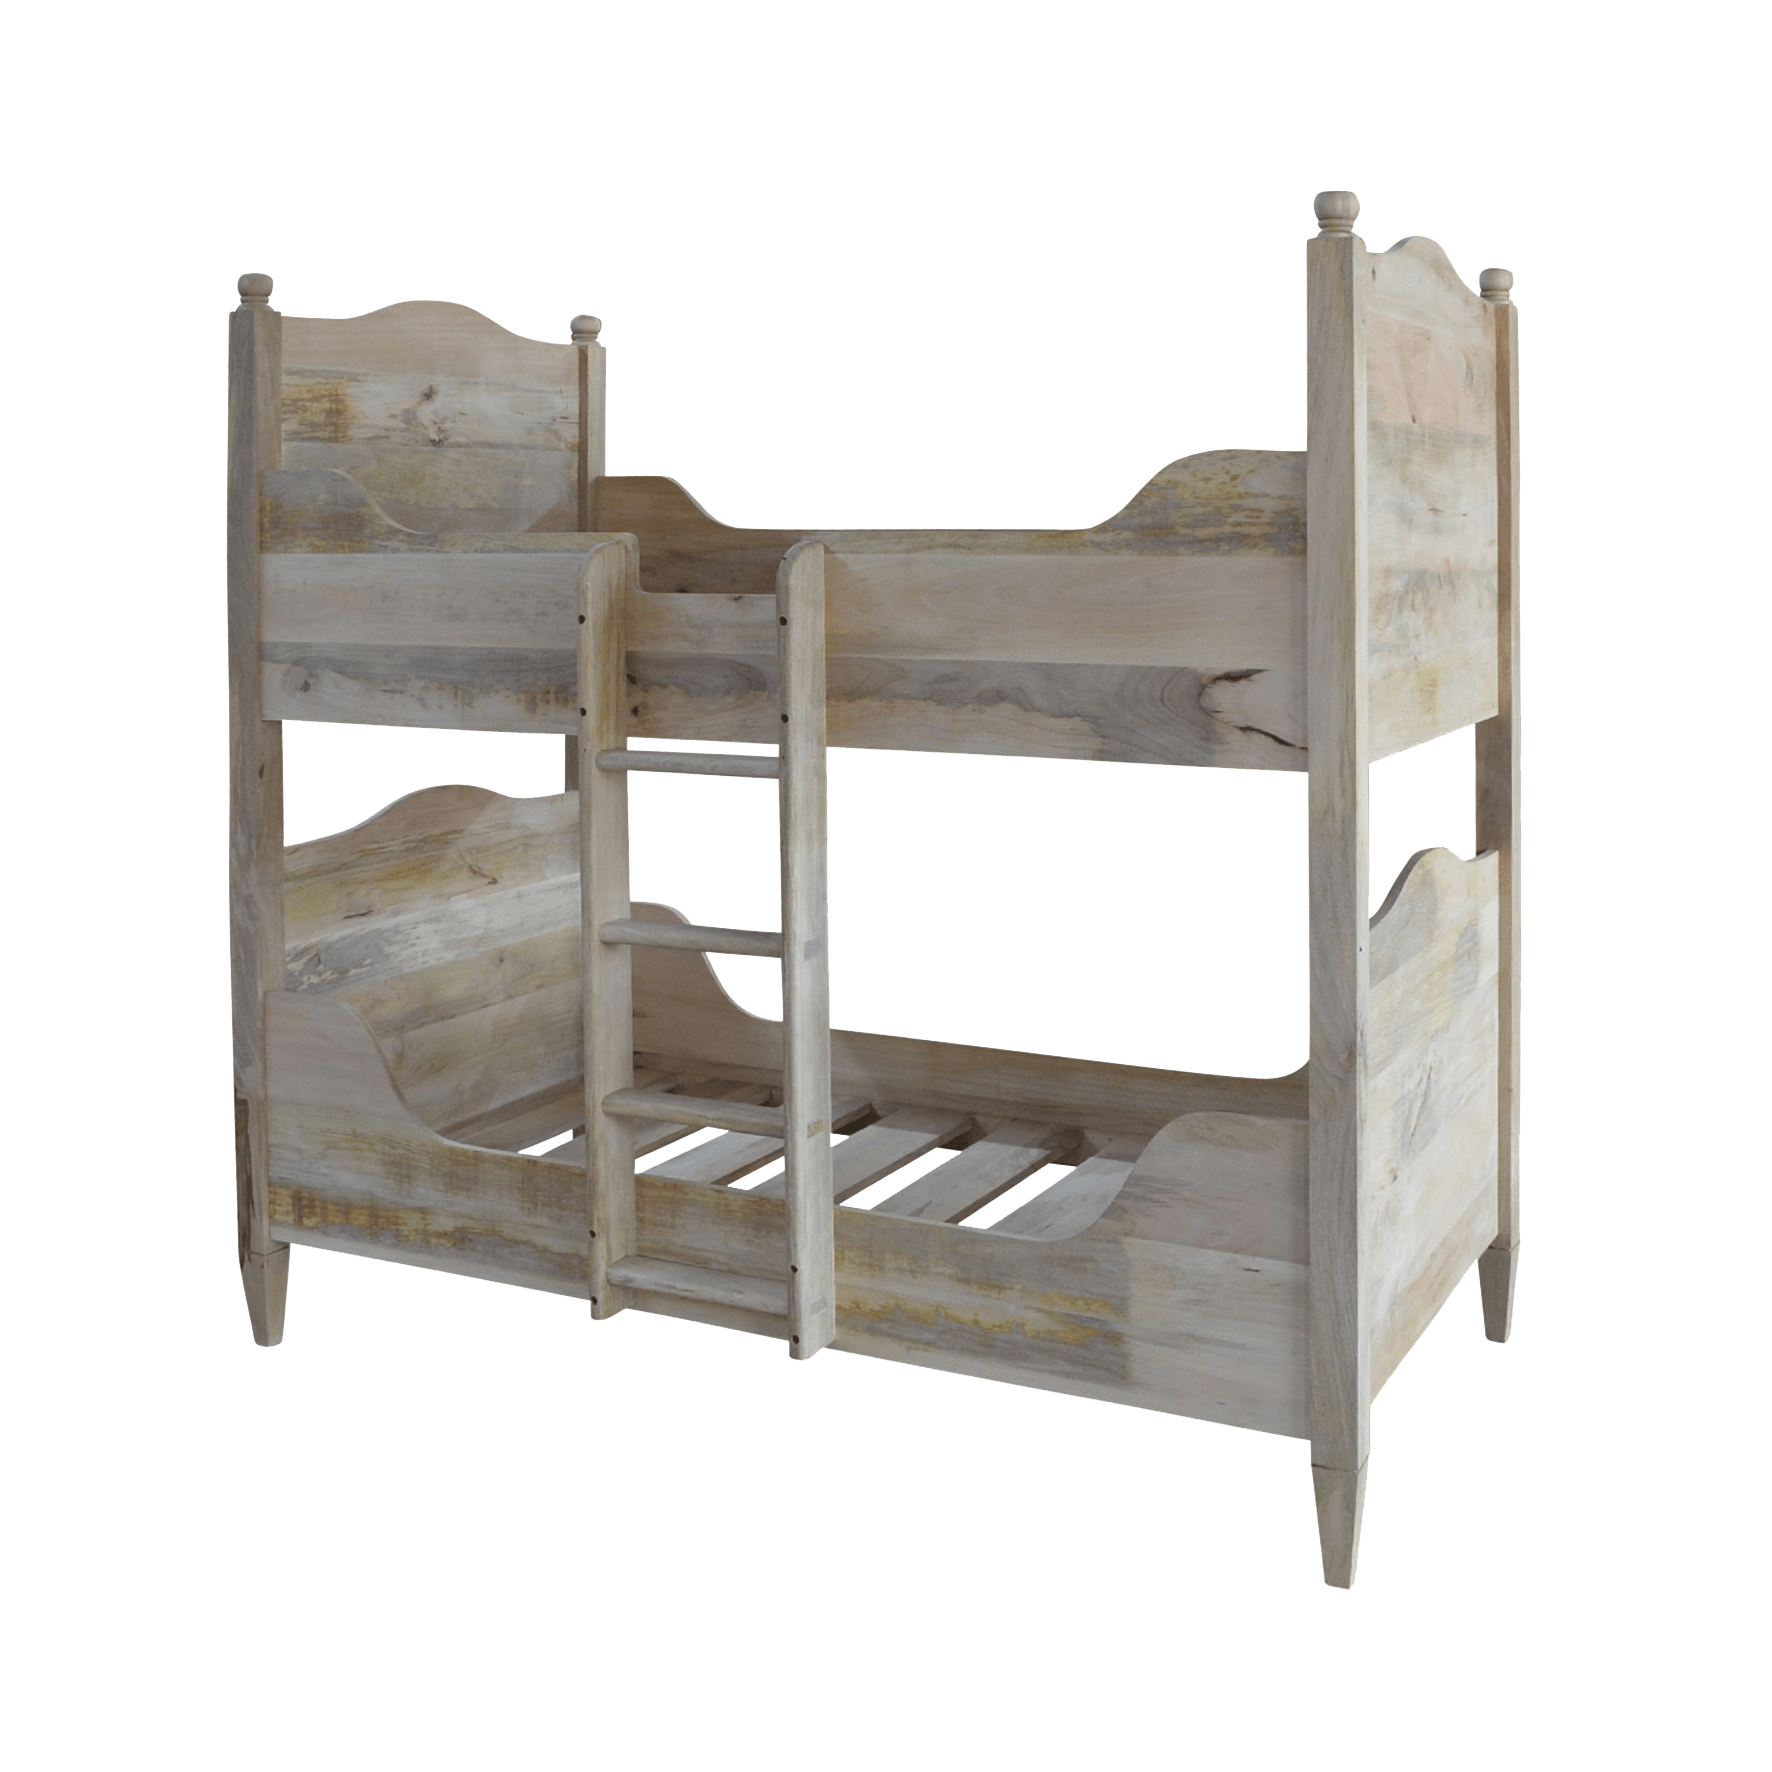 Gustavian Bunk Beds Bd4 Sble Goosie, Wood You Bunk Beds